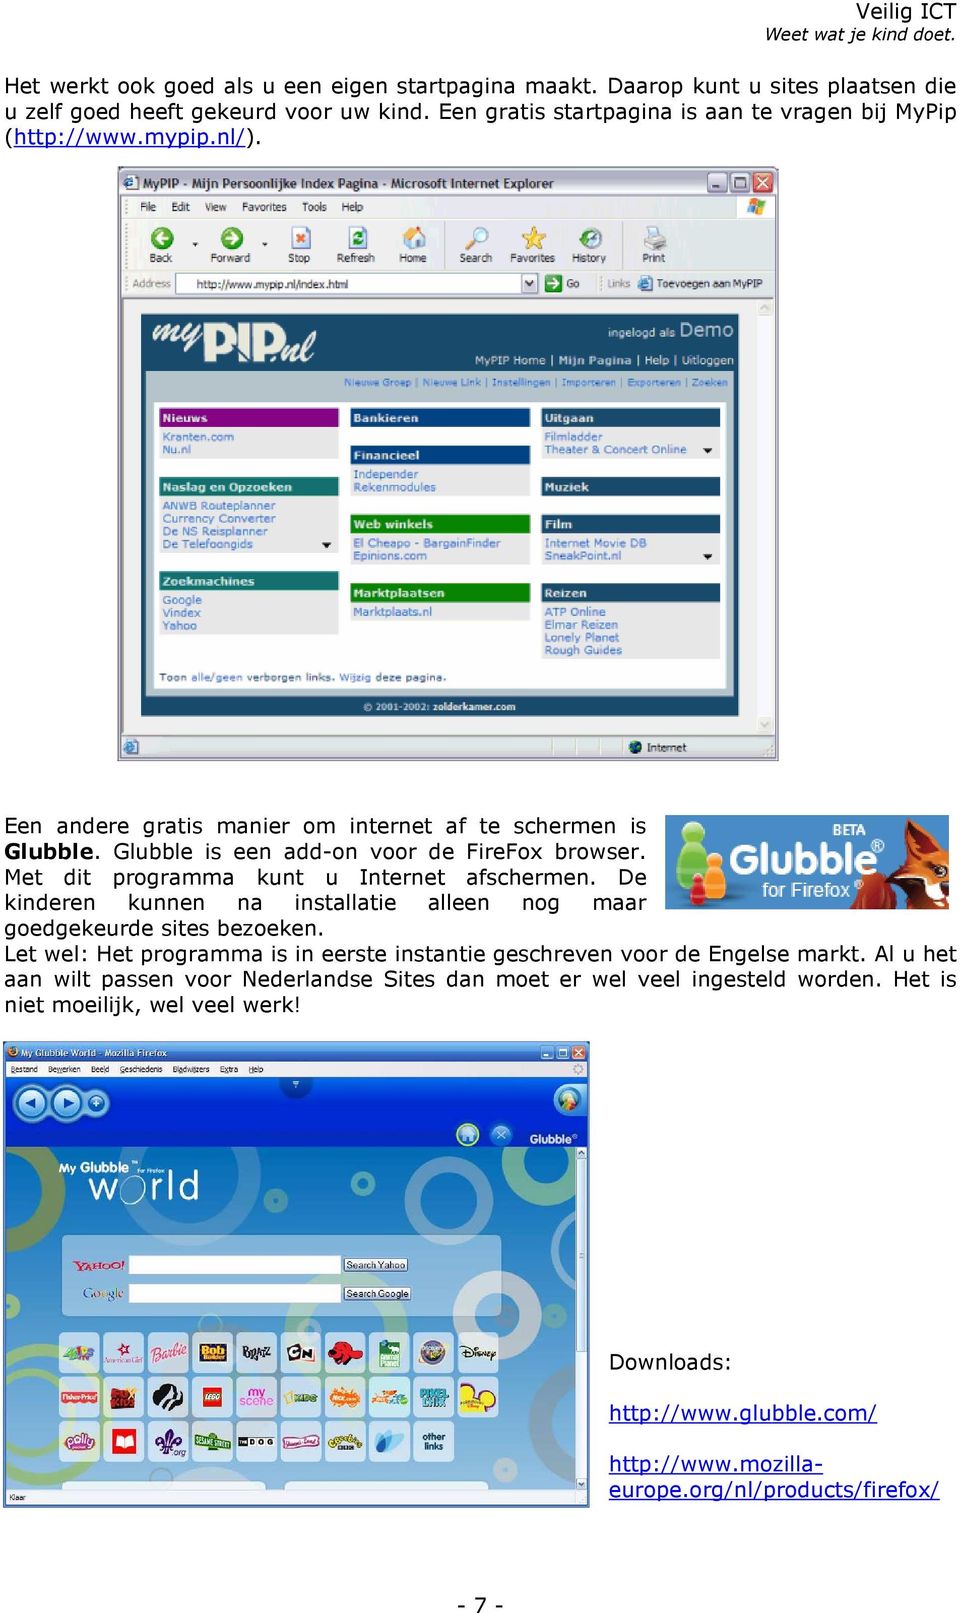 Glubble is een add-on voor de FireFox browser. Met dit programma kunt u Internet afschermen. De kinderen kunnen na installatie alleen nog maar goedgekeurde sites bezoeken.